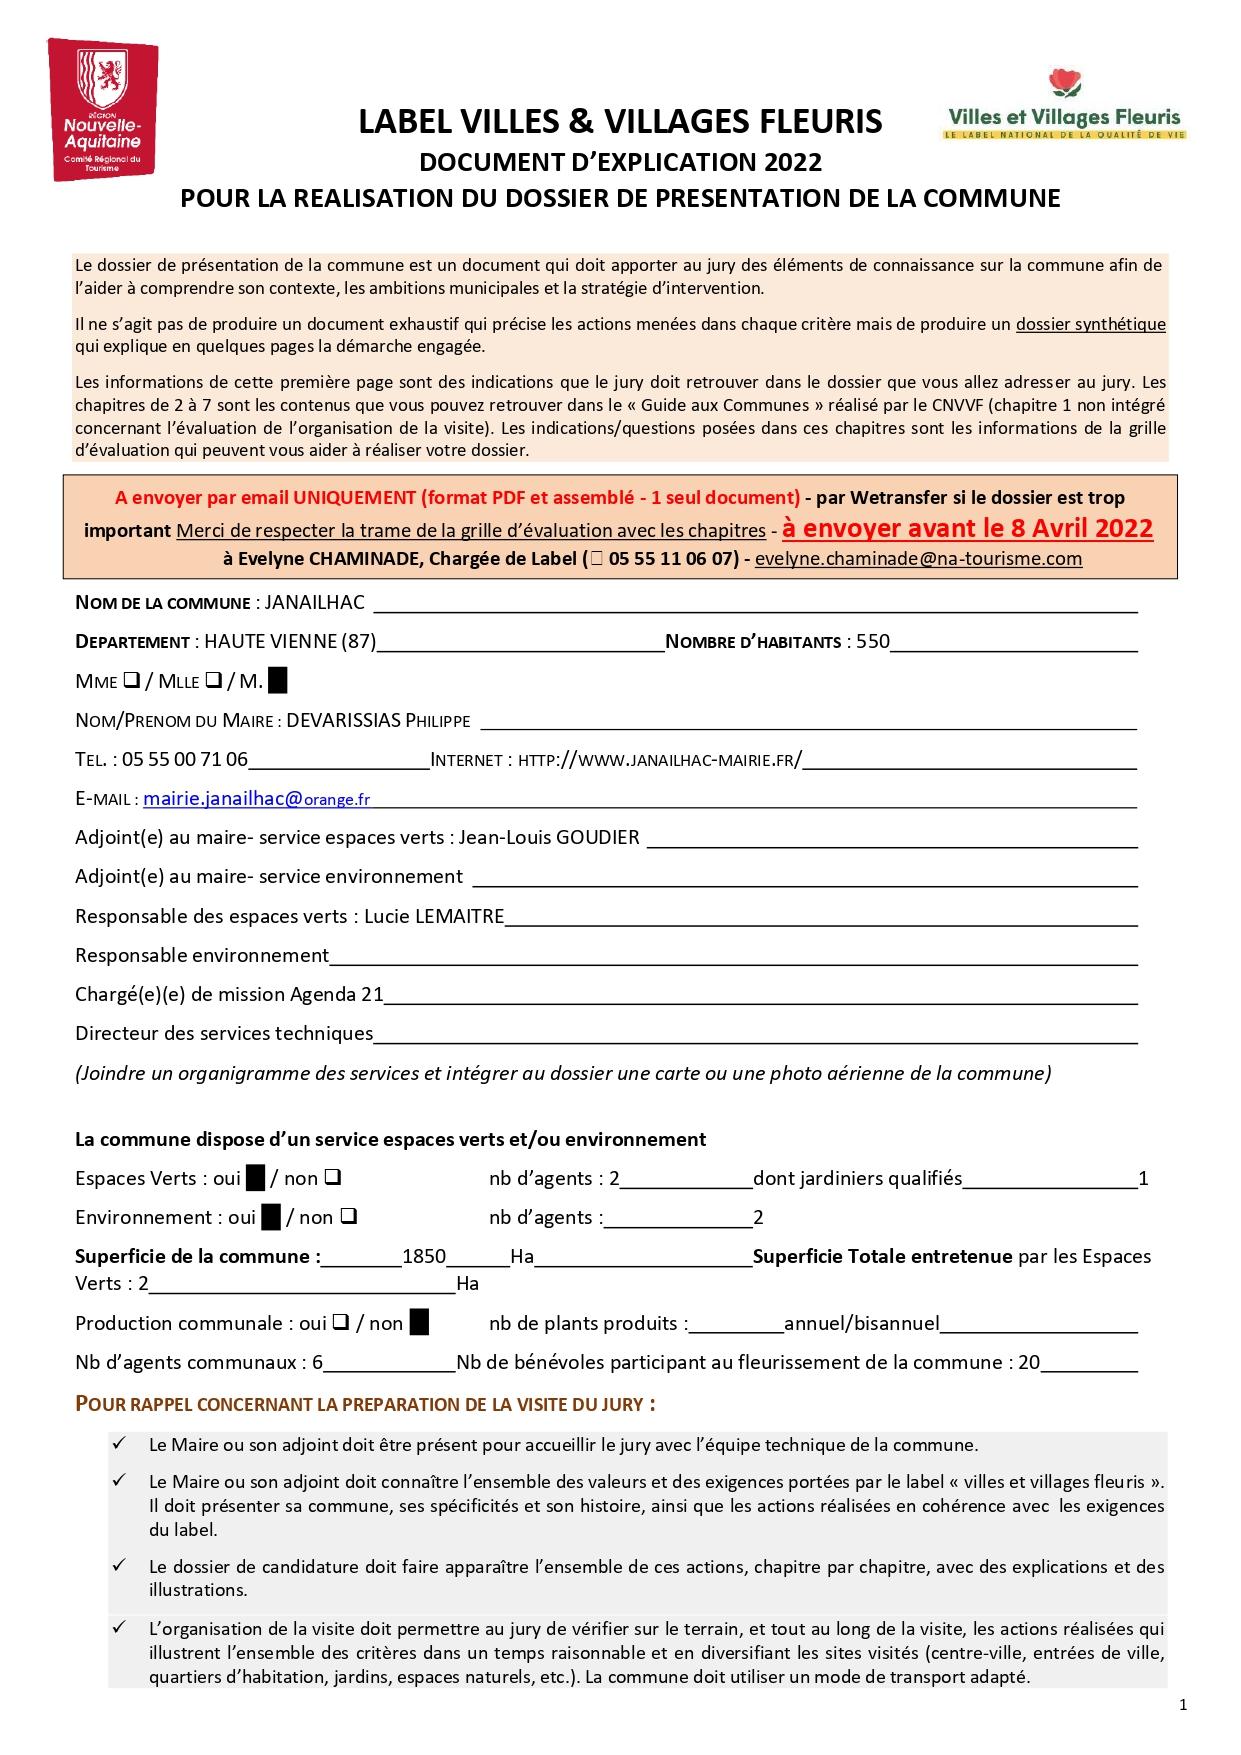 Dossier fleurissement 2022 janailhac 1 1 pages to jpg 0001